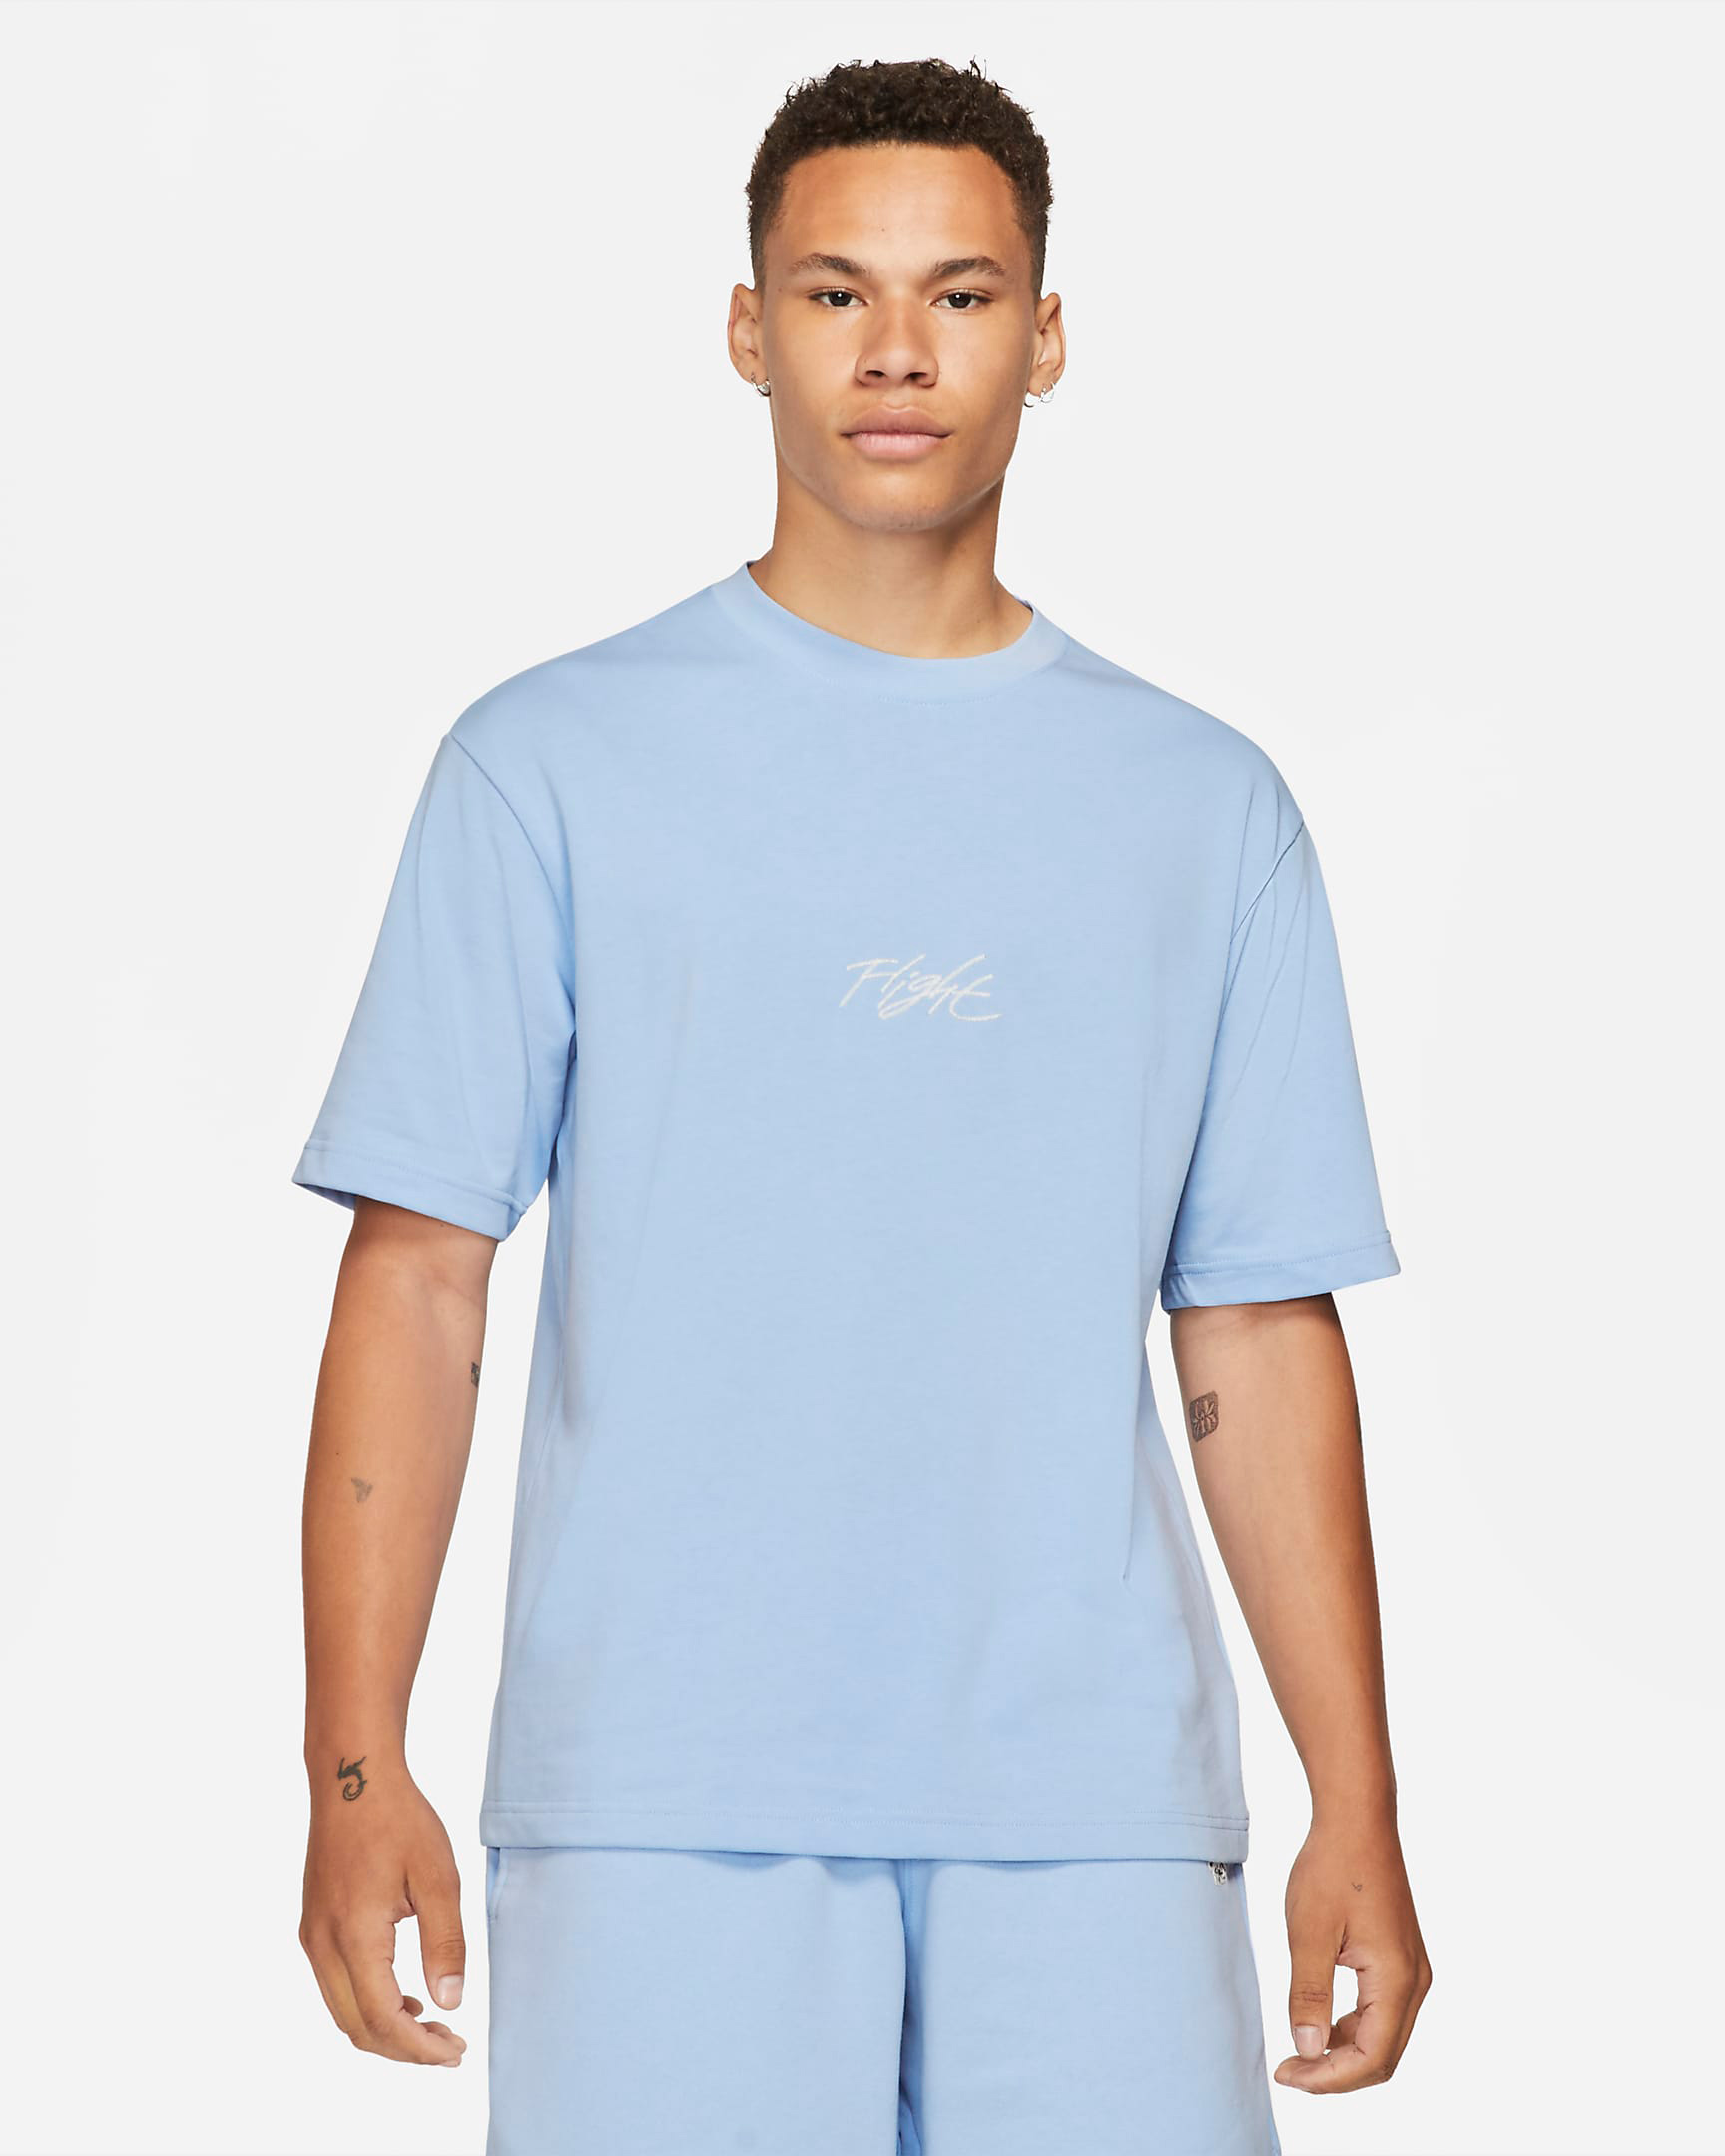 jordan-5-bluebird-shirt